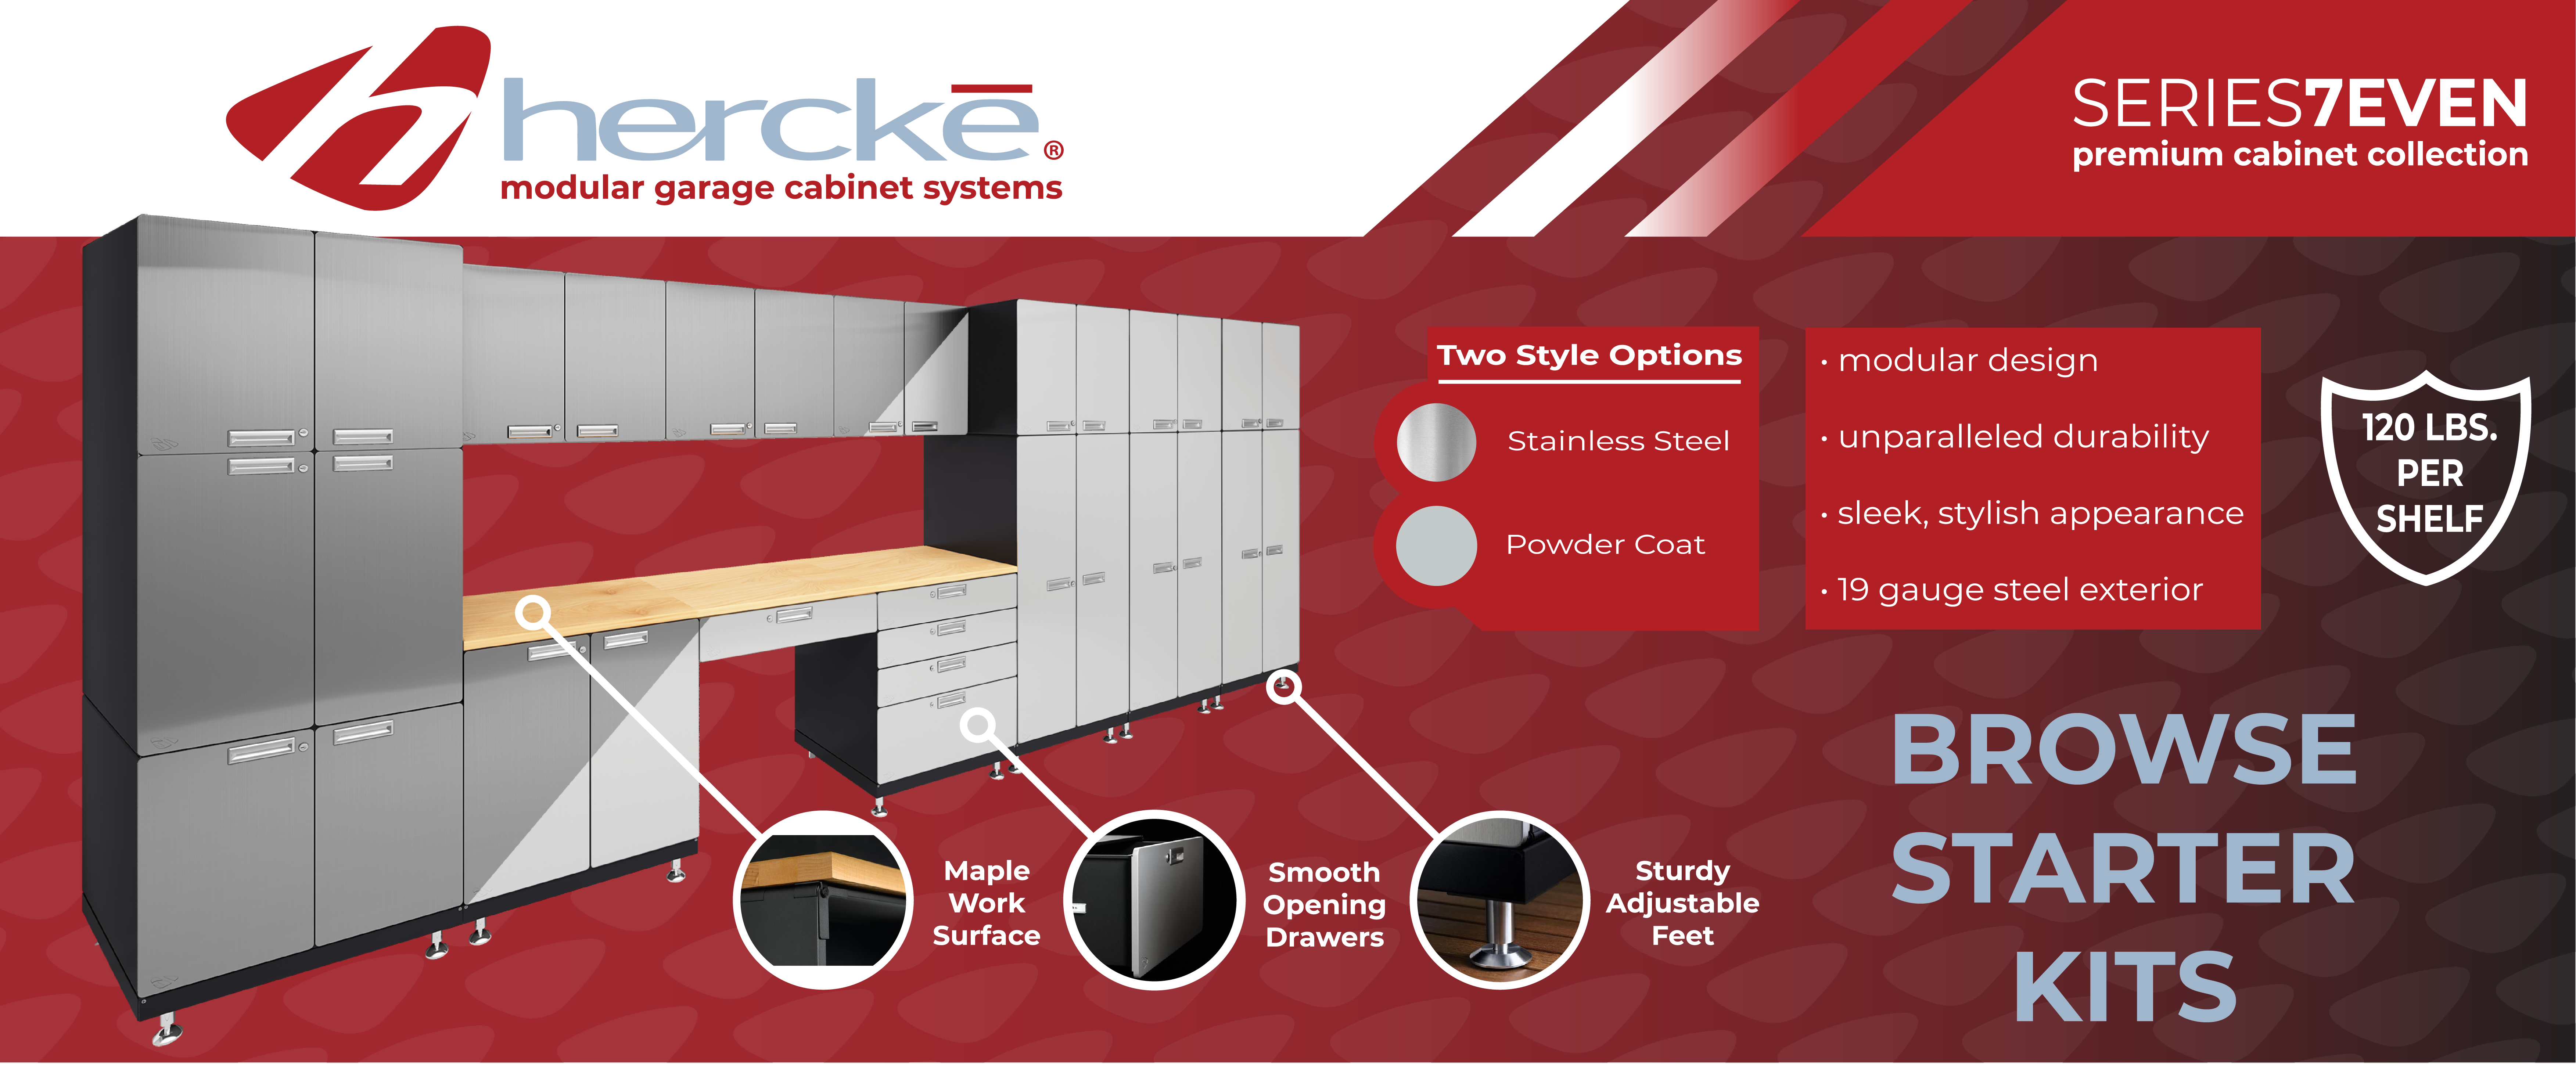 Modular Garage Cabinet Systems Hercke